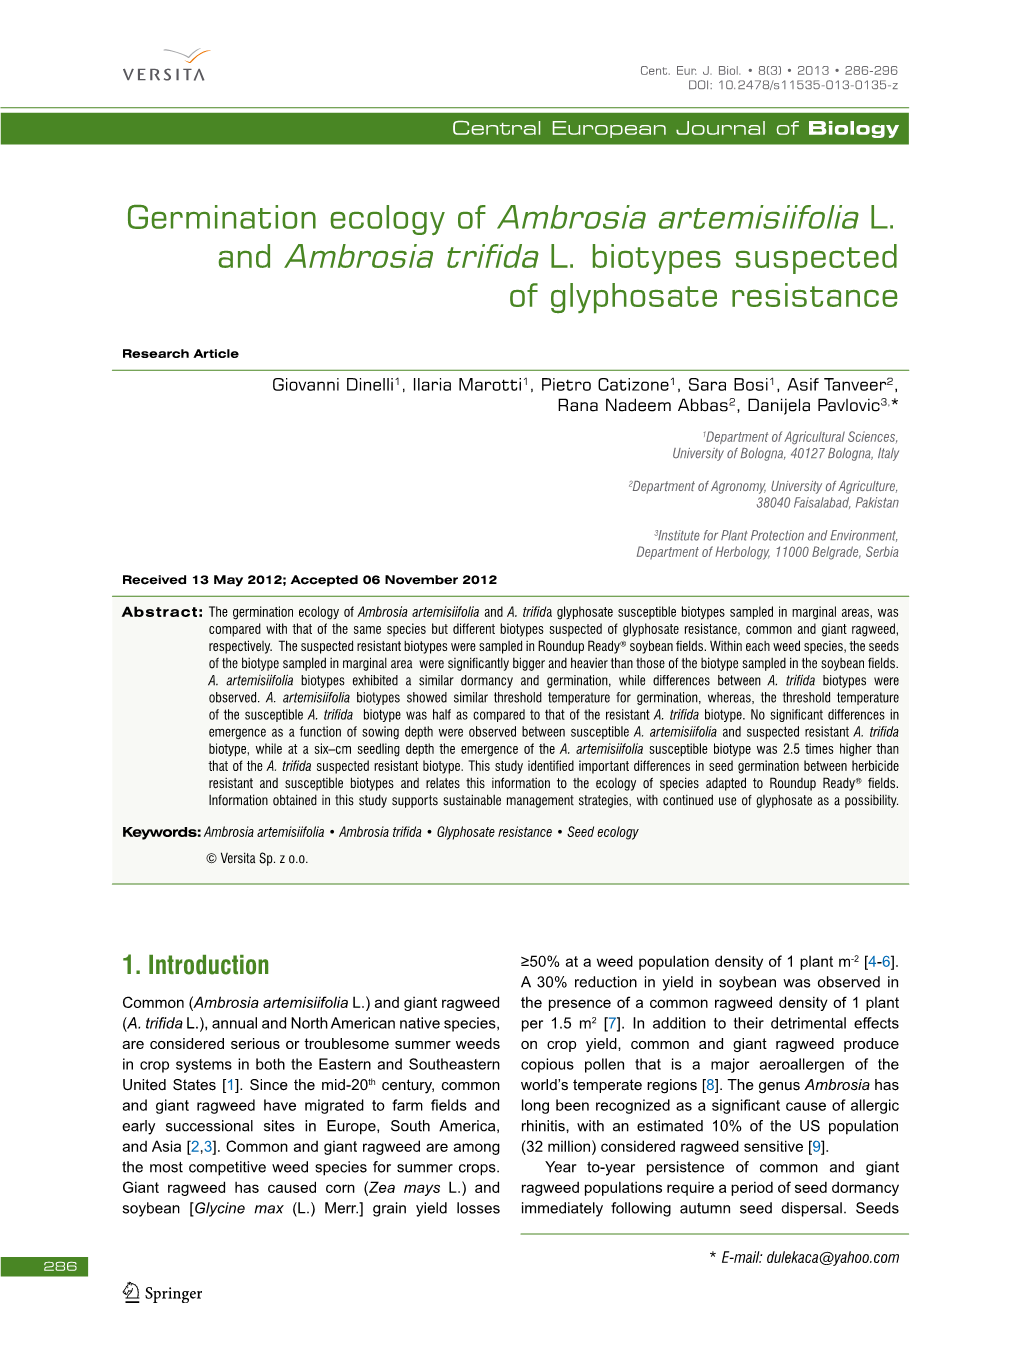 Germination Ecology of Ambrosia Artemisiifolia L. and Ambrosia Trifida L